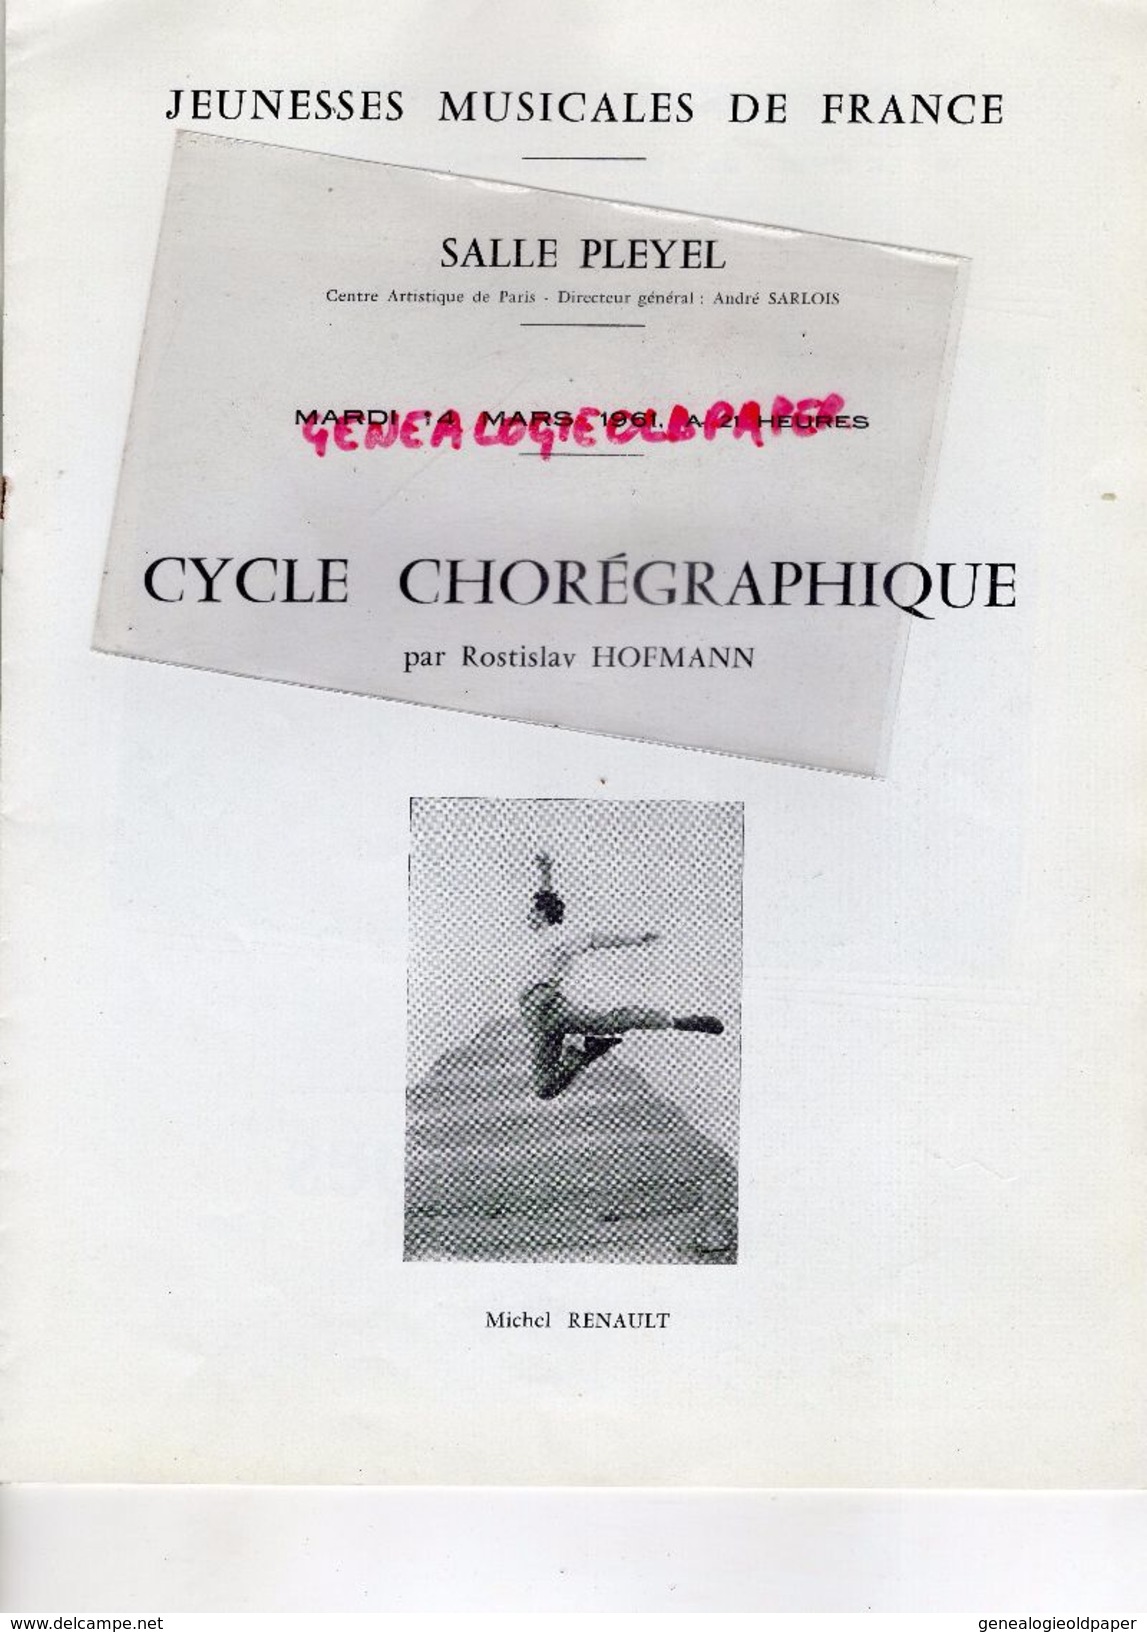 75- PARIS- PROGRAMME SALLE PLEYEL- 14-3-1961-CYCLE CHOREGRAPHIQUE DANSE-ROSTILAV HOFFMANN-MICHEL RENAULT-JOSETTE CLAVIER